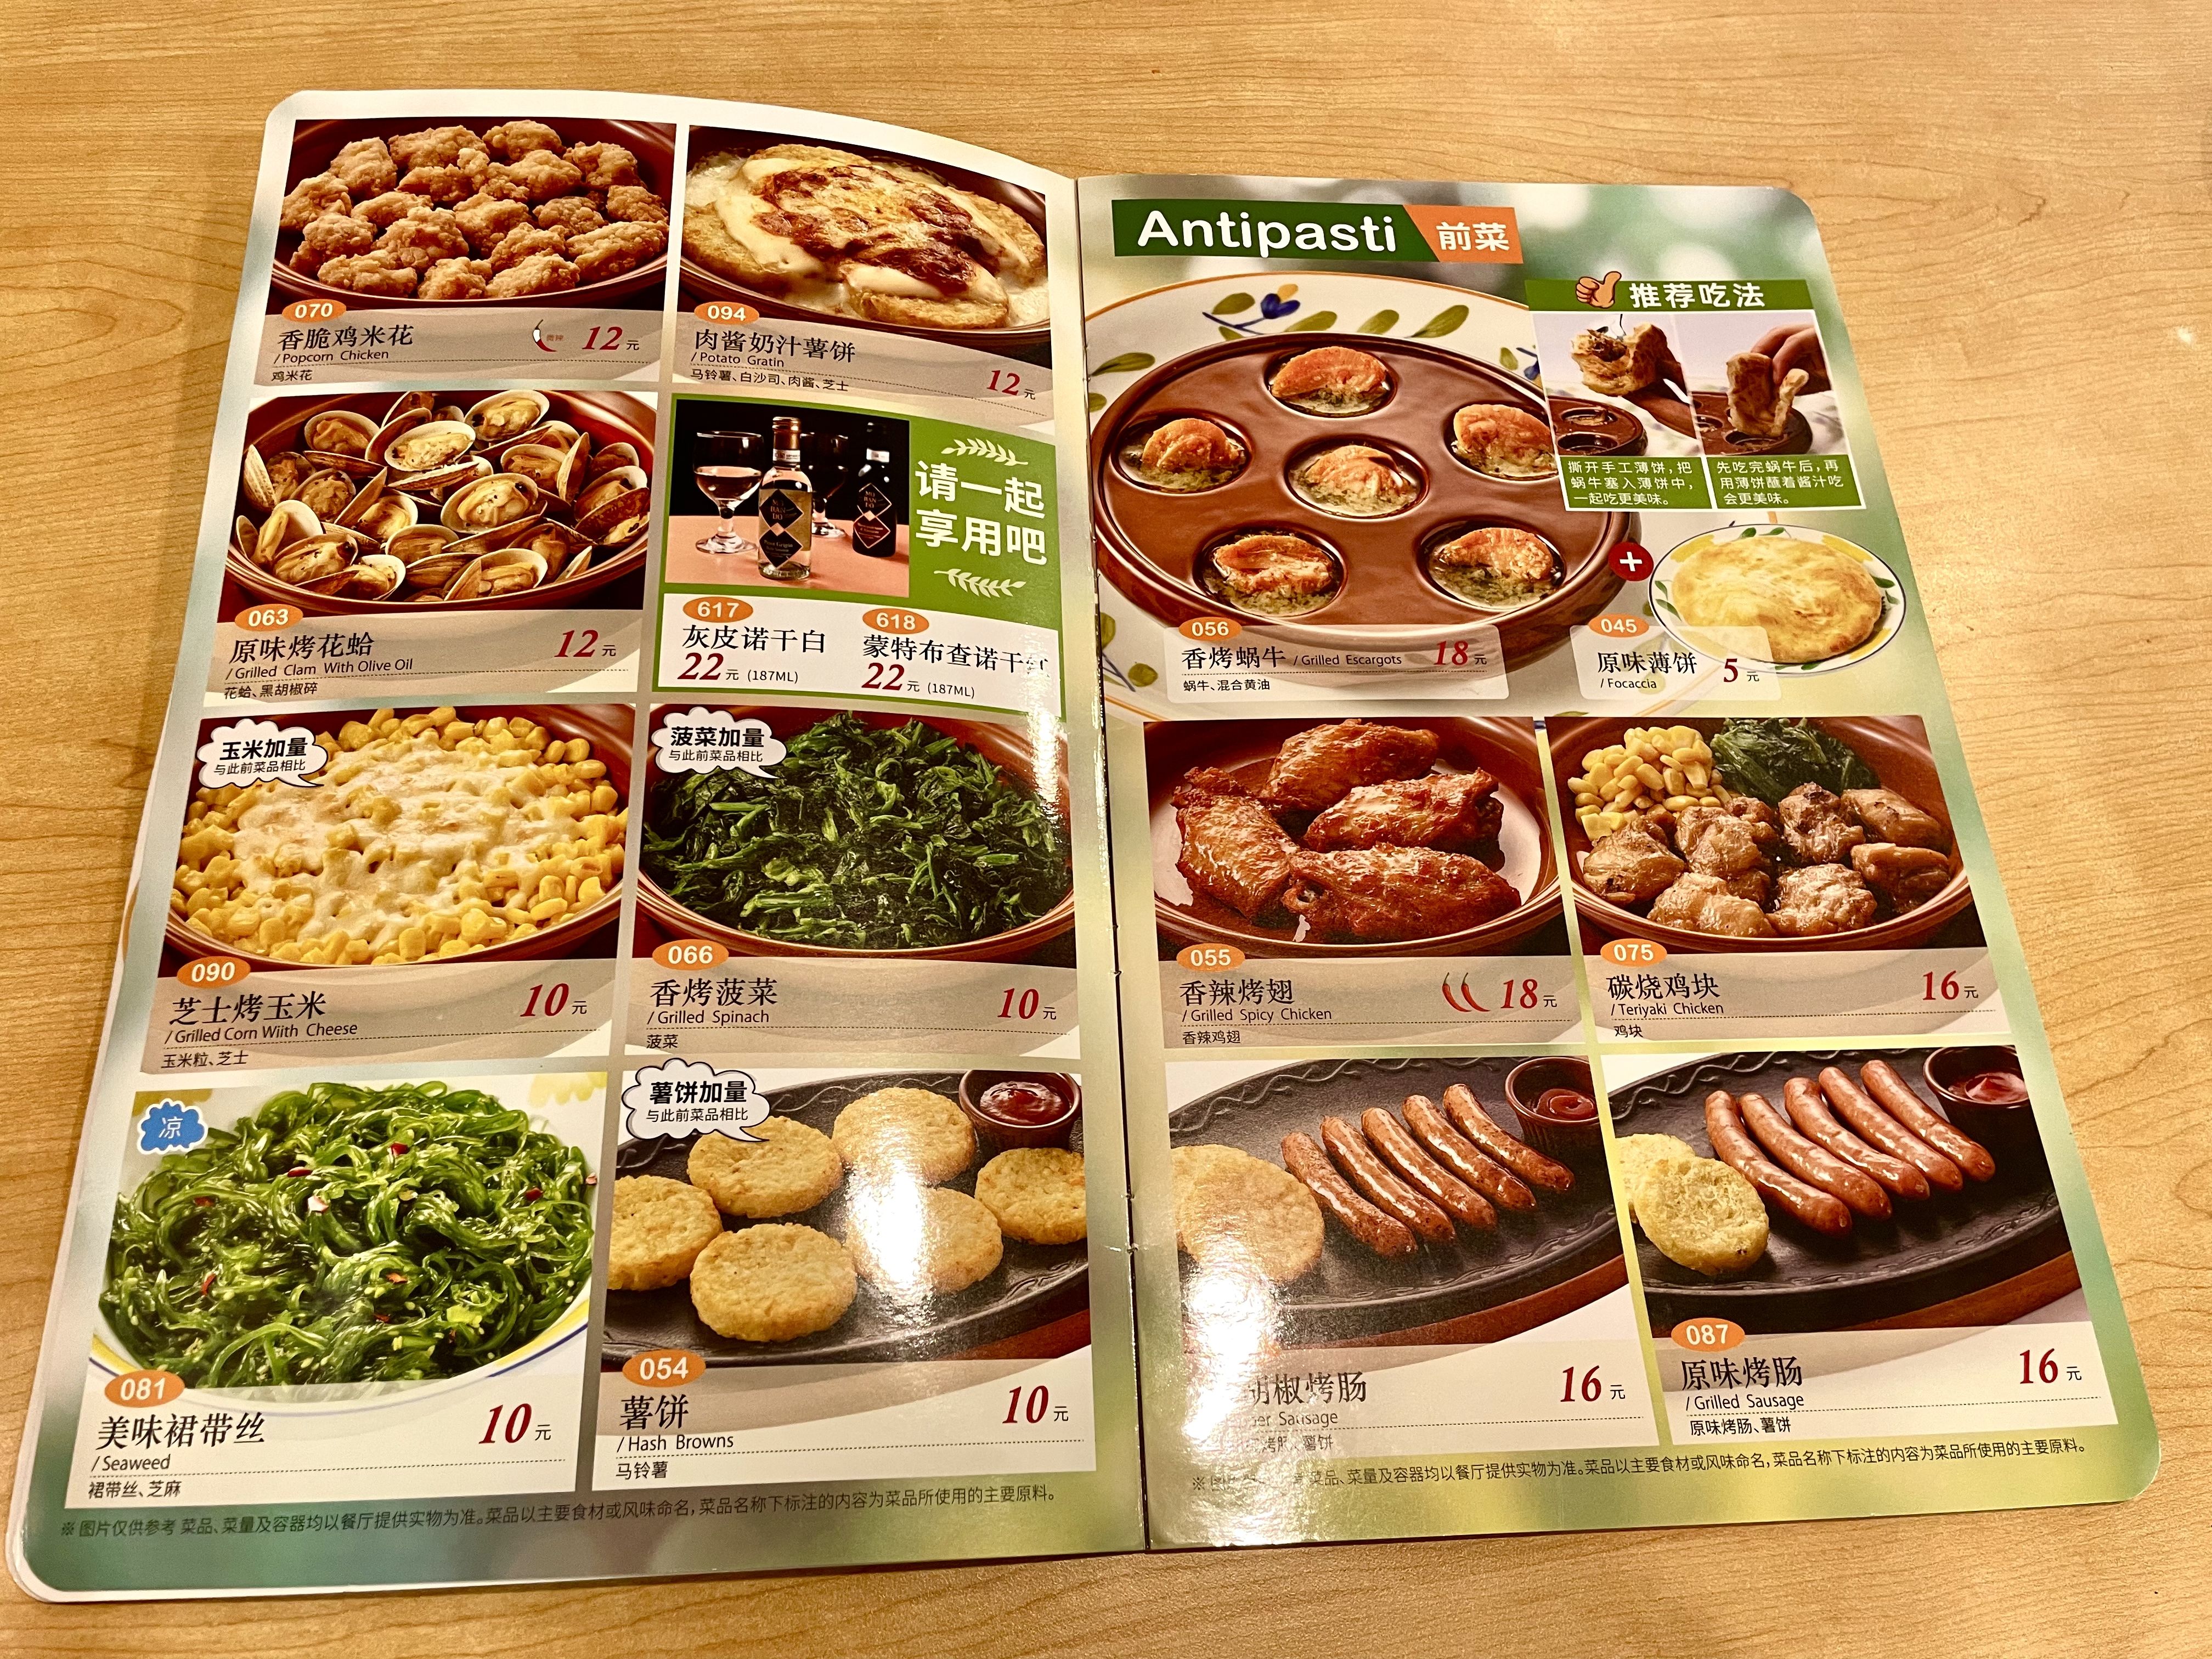 价格体系完全是相反的画风:根据北京某家萨莉亚的最新菜单,包括主食